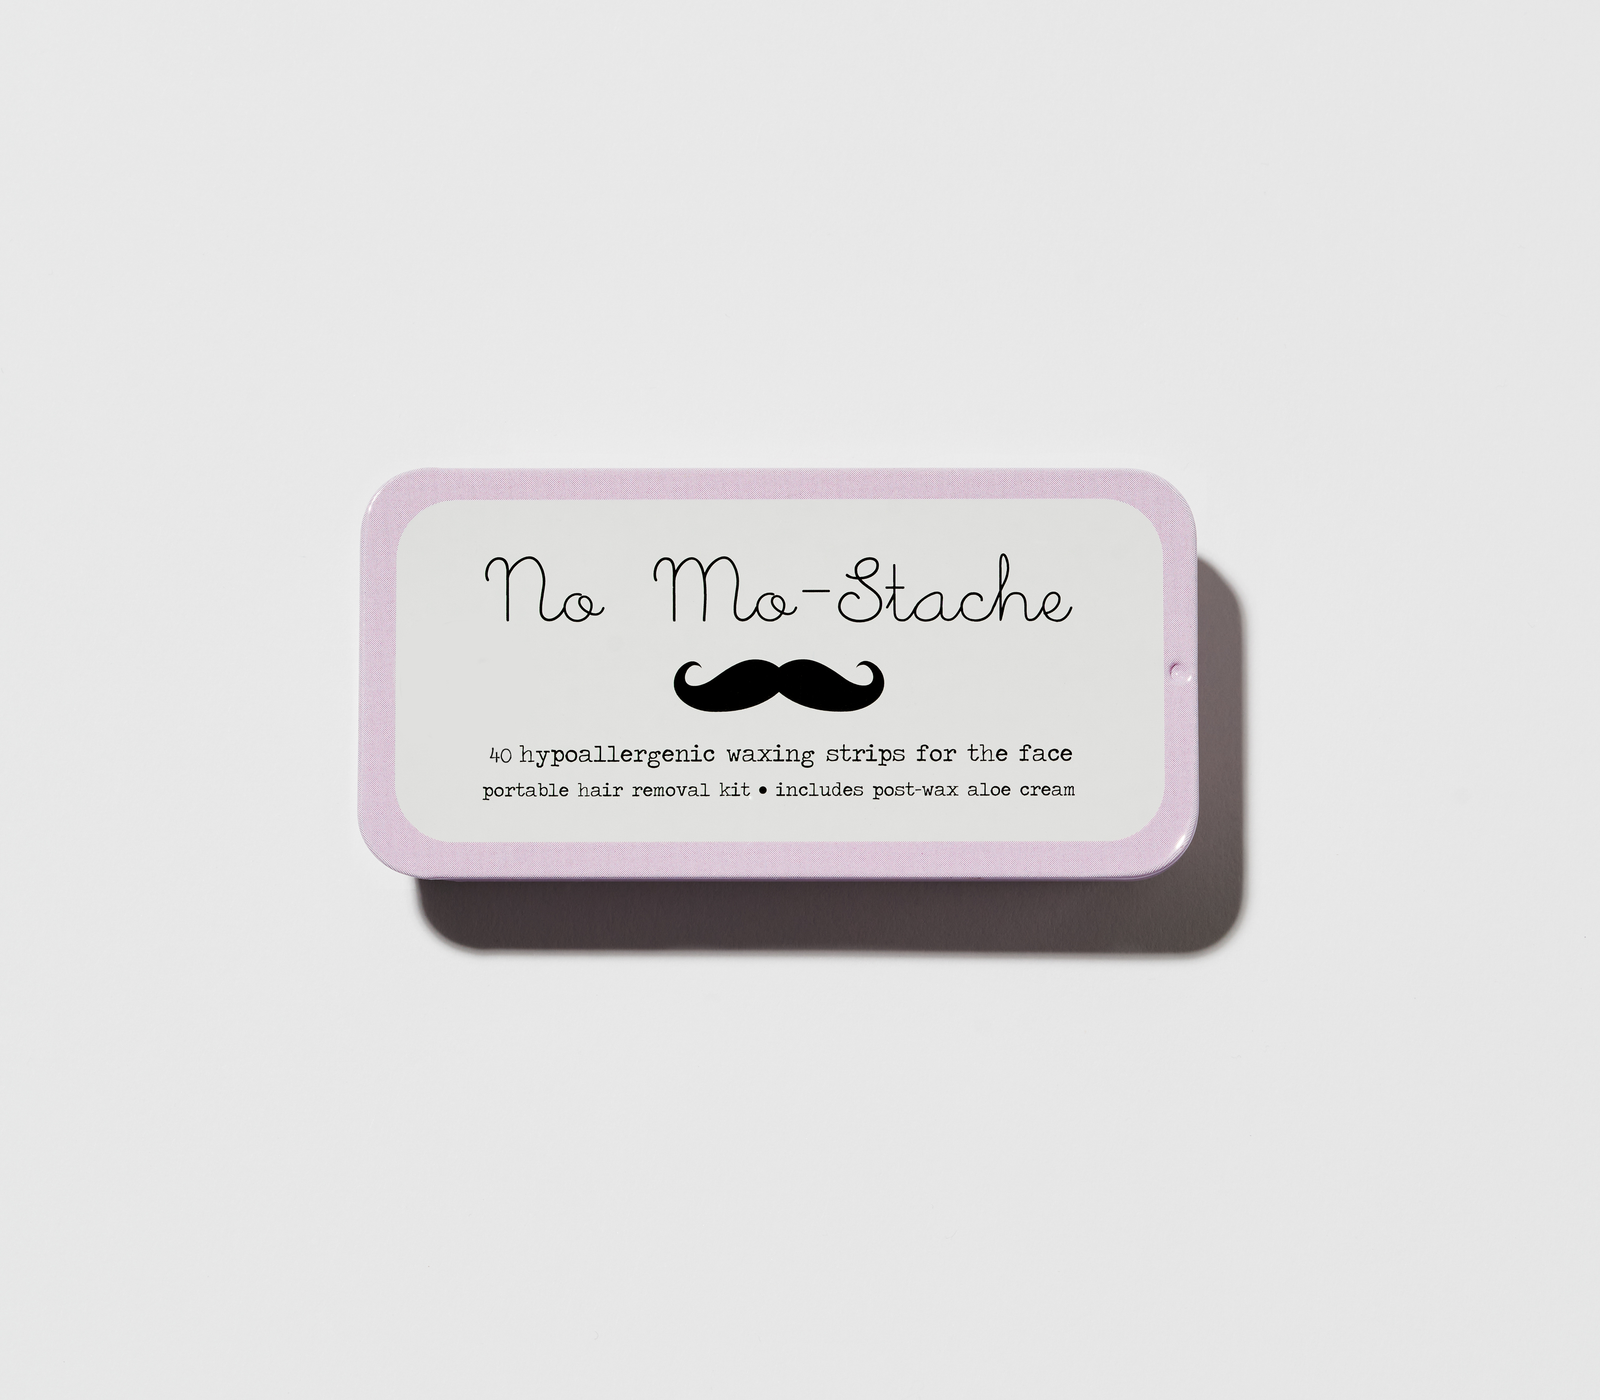 No Mo-Stache Portable Lip Wax Kit (40 Strips)